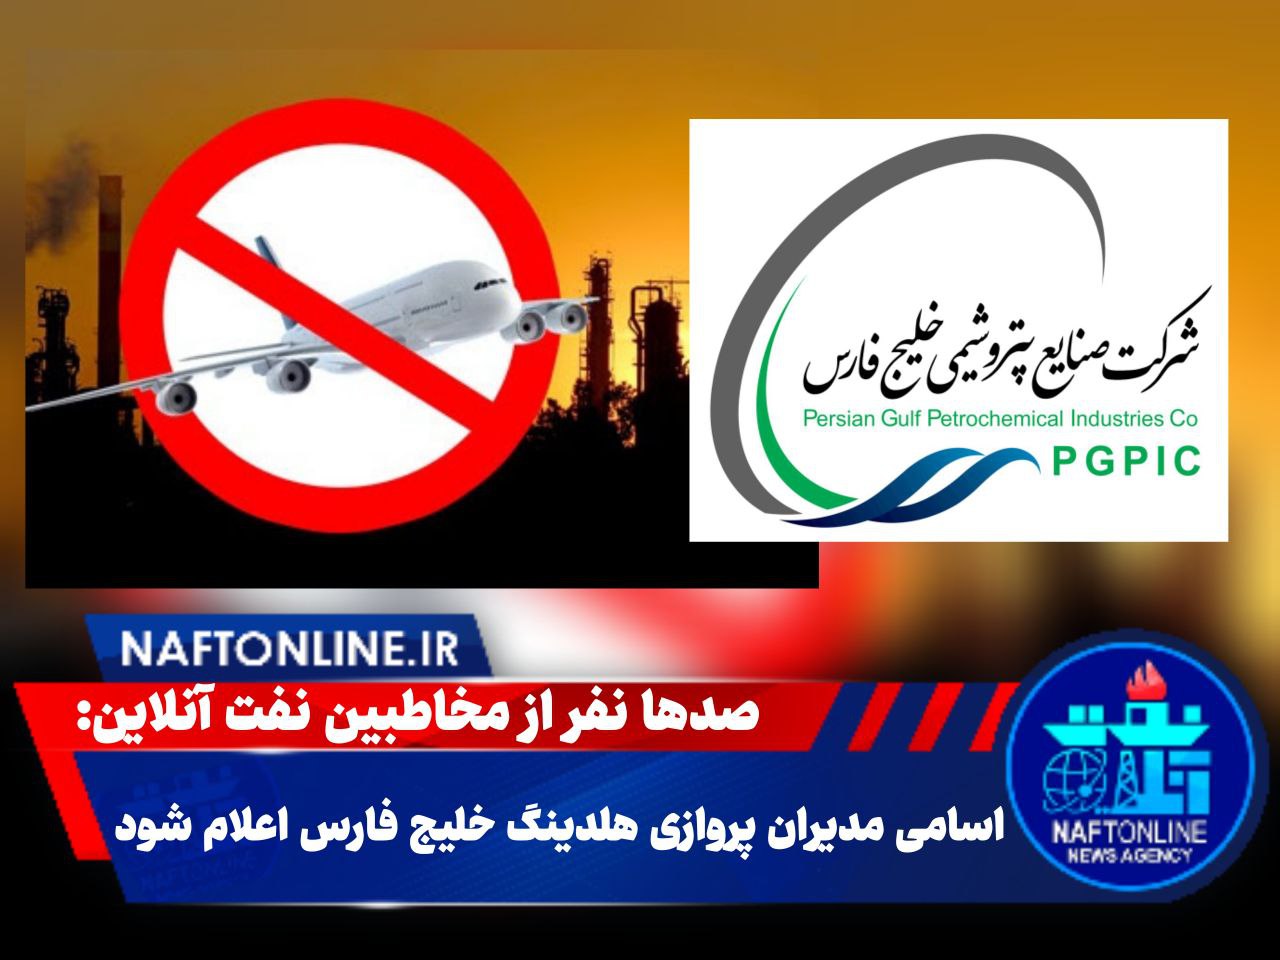 مدیران پروازی شرکت های زیر مجموعه شرکت پتروشیمی خلیج فارس را برکنار کنید | نفت آنلاین